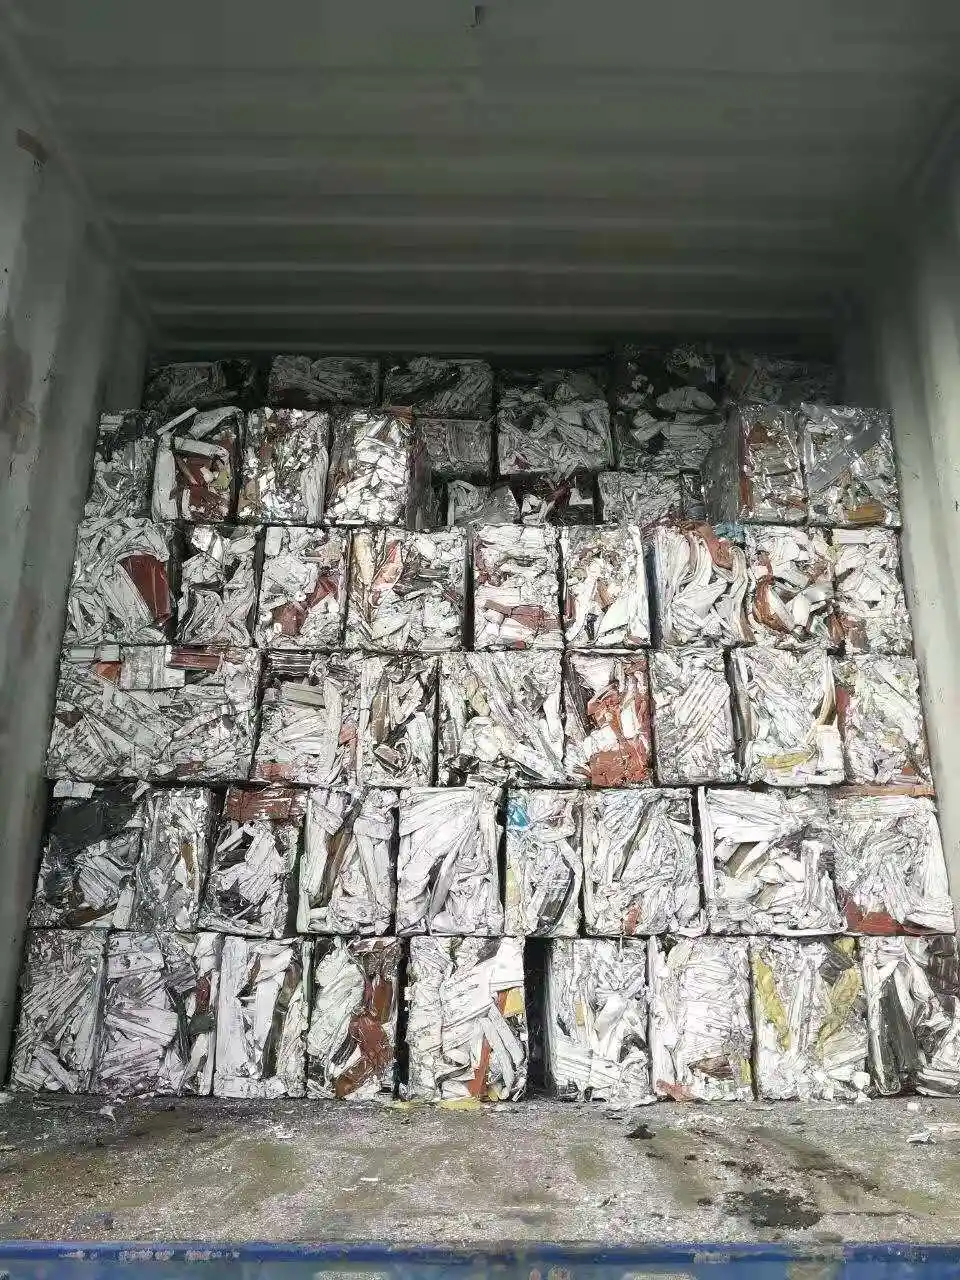 Hot Sale Aluminium Extrusion 6063 Scrap/Aluminum Scrap /Aluminum Ubc Scrap